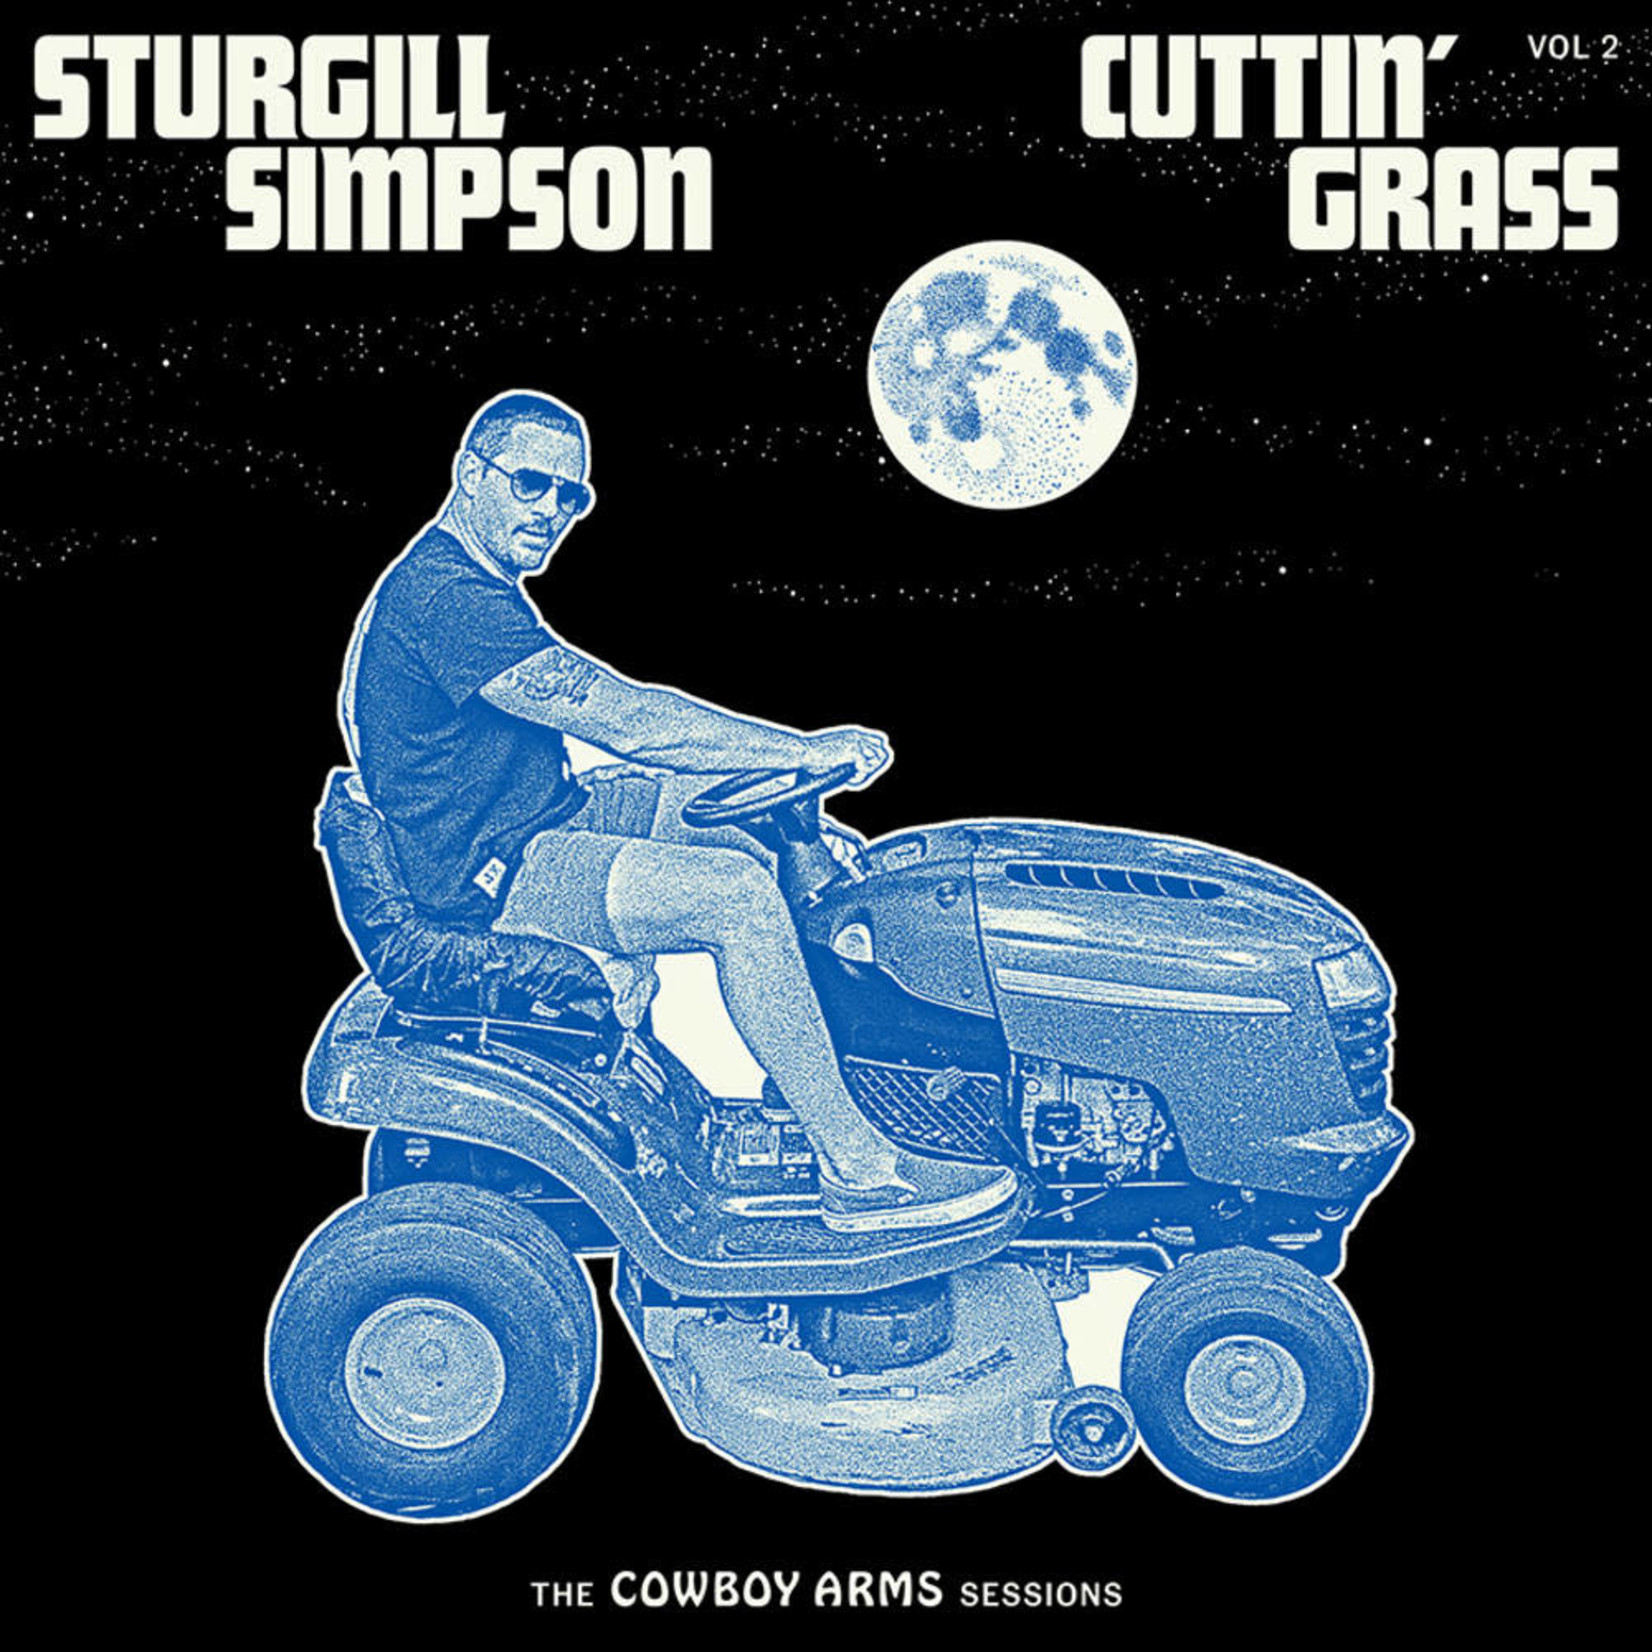 High Top Mountain Sturgill Simpson - Cuttin' Grass Vol 2 (LP) [Blue/White]